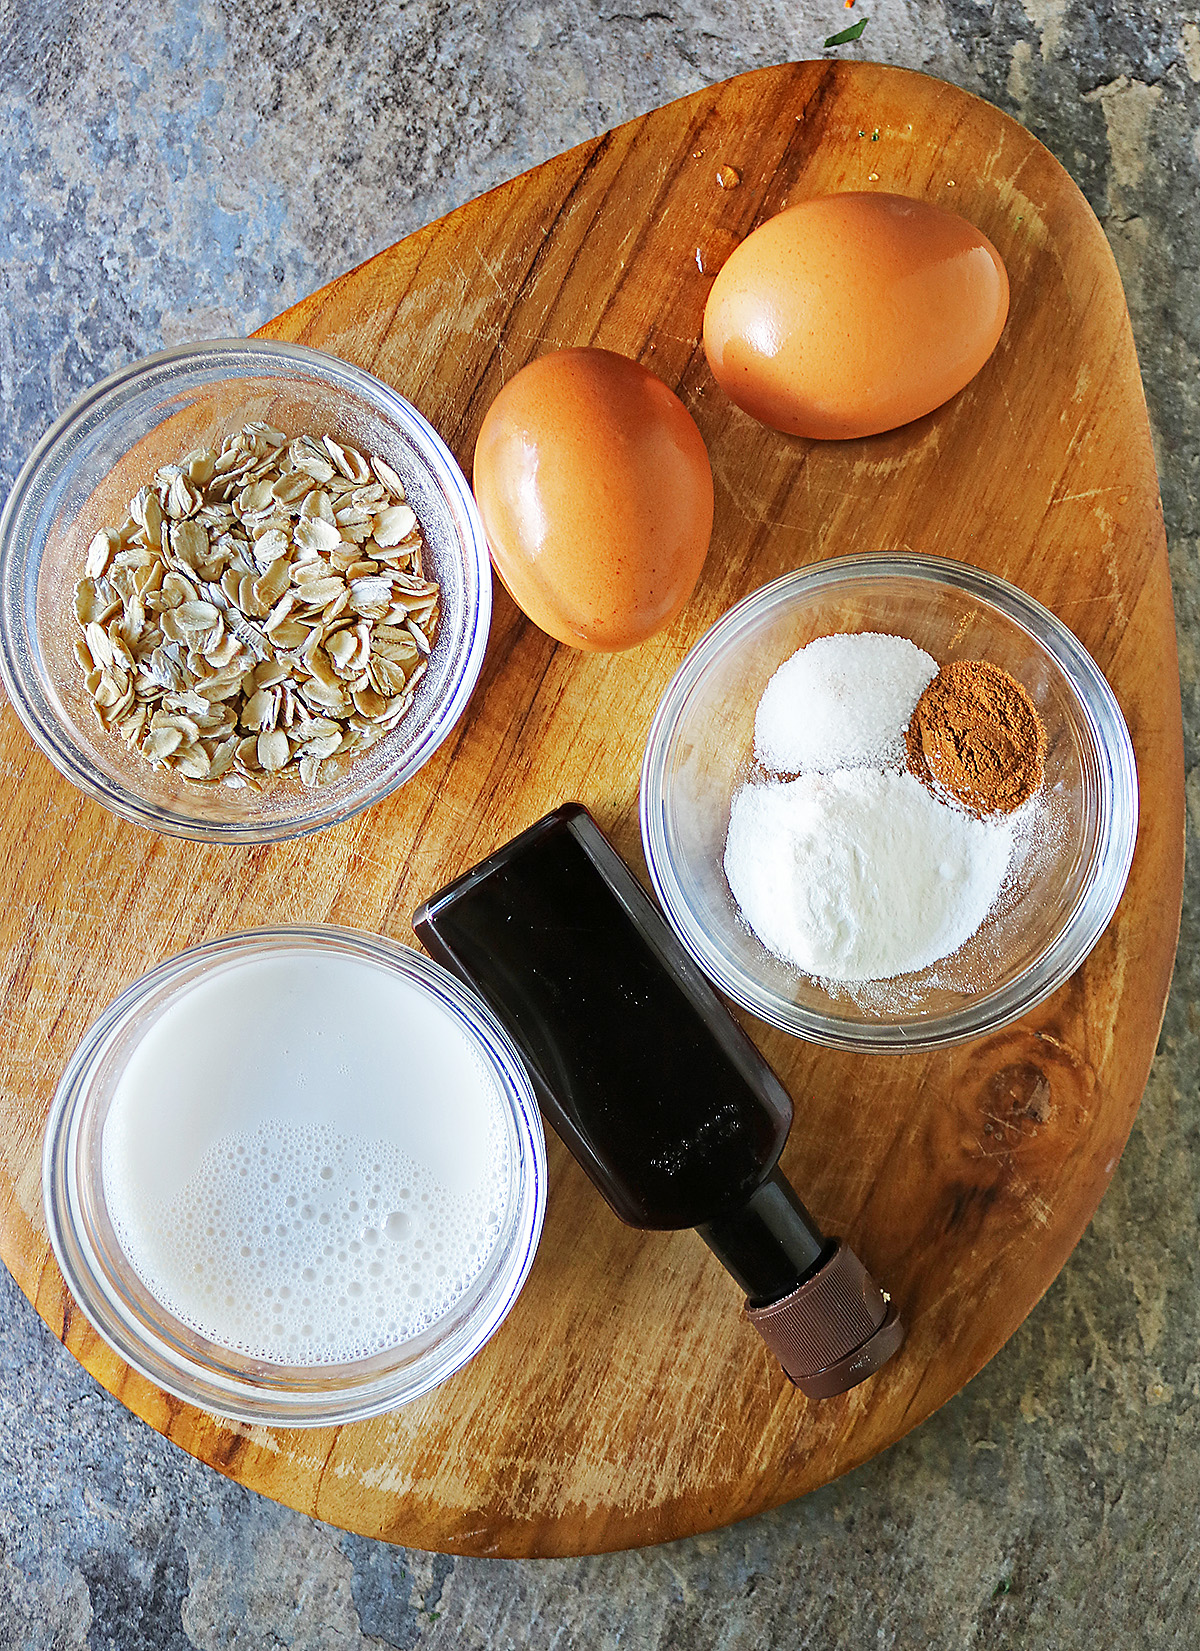 Ingredients to make oat flour pancakes